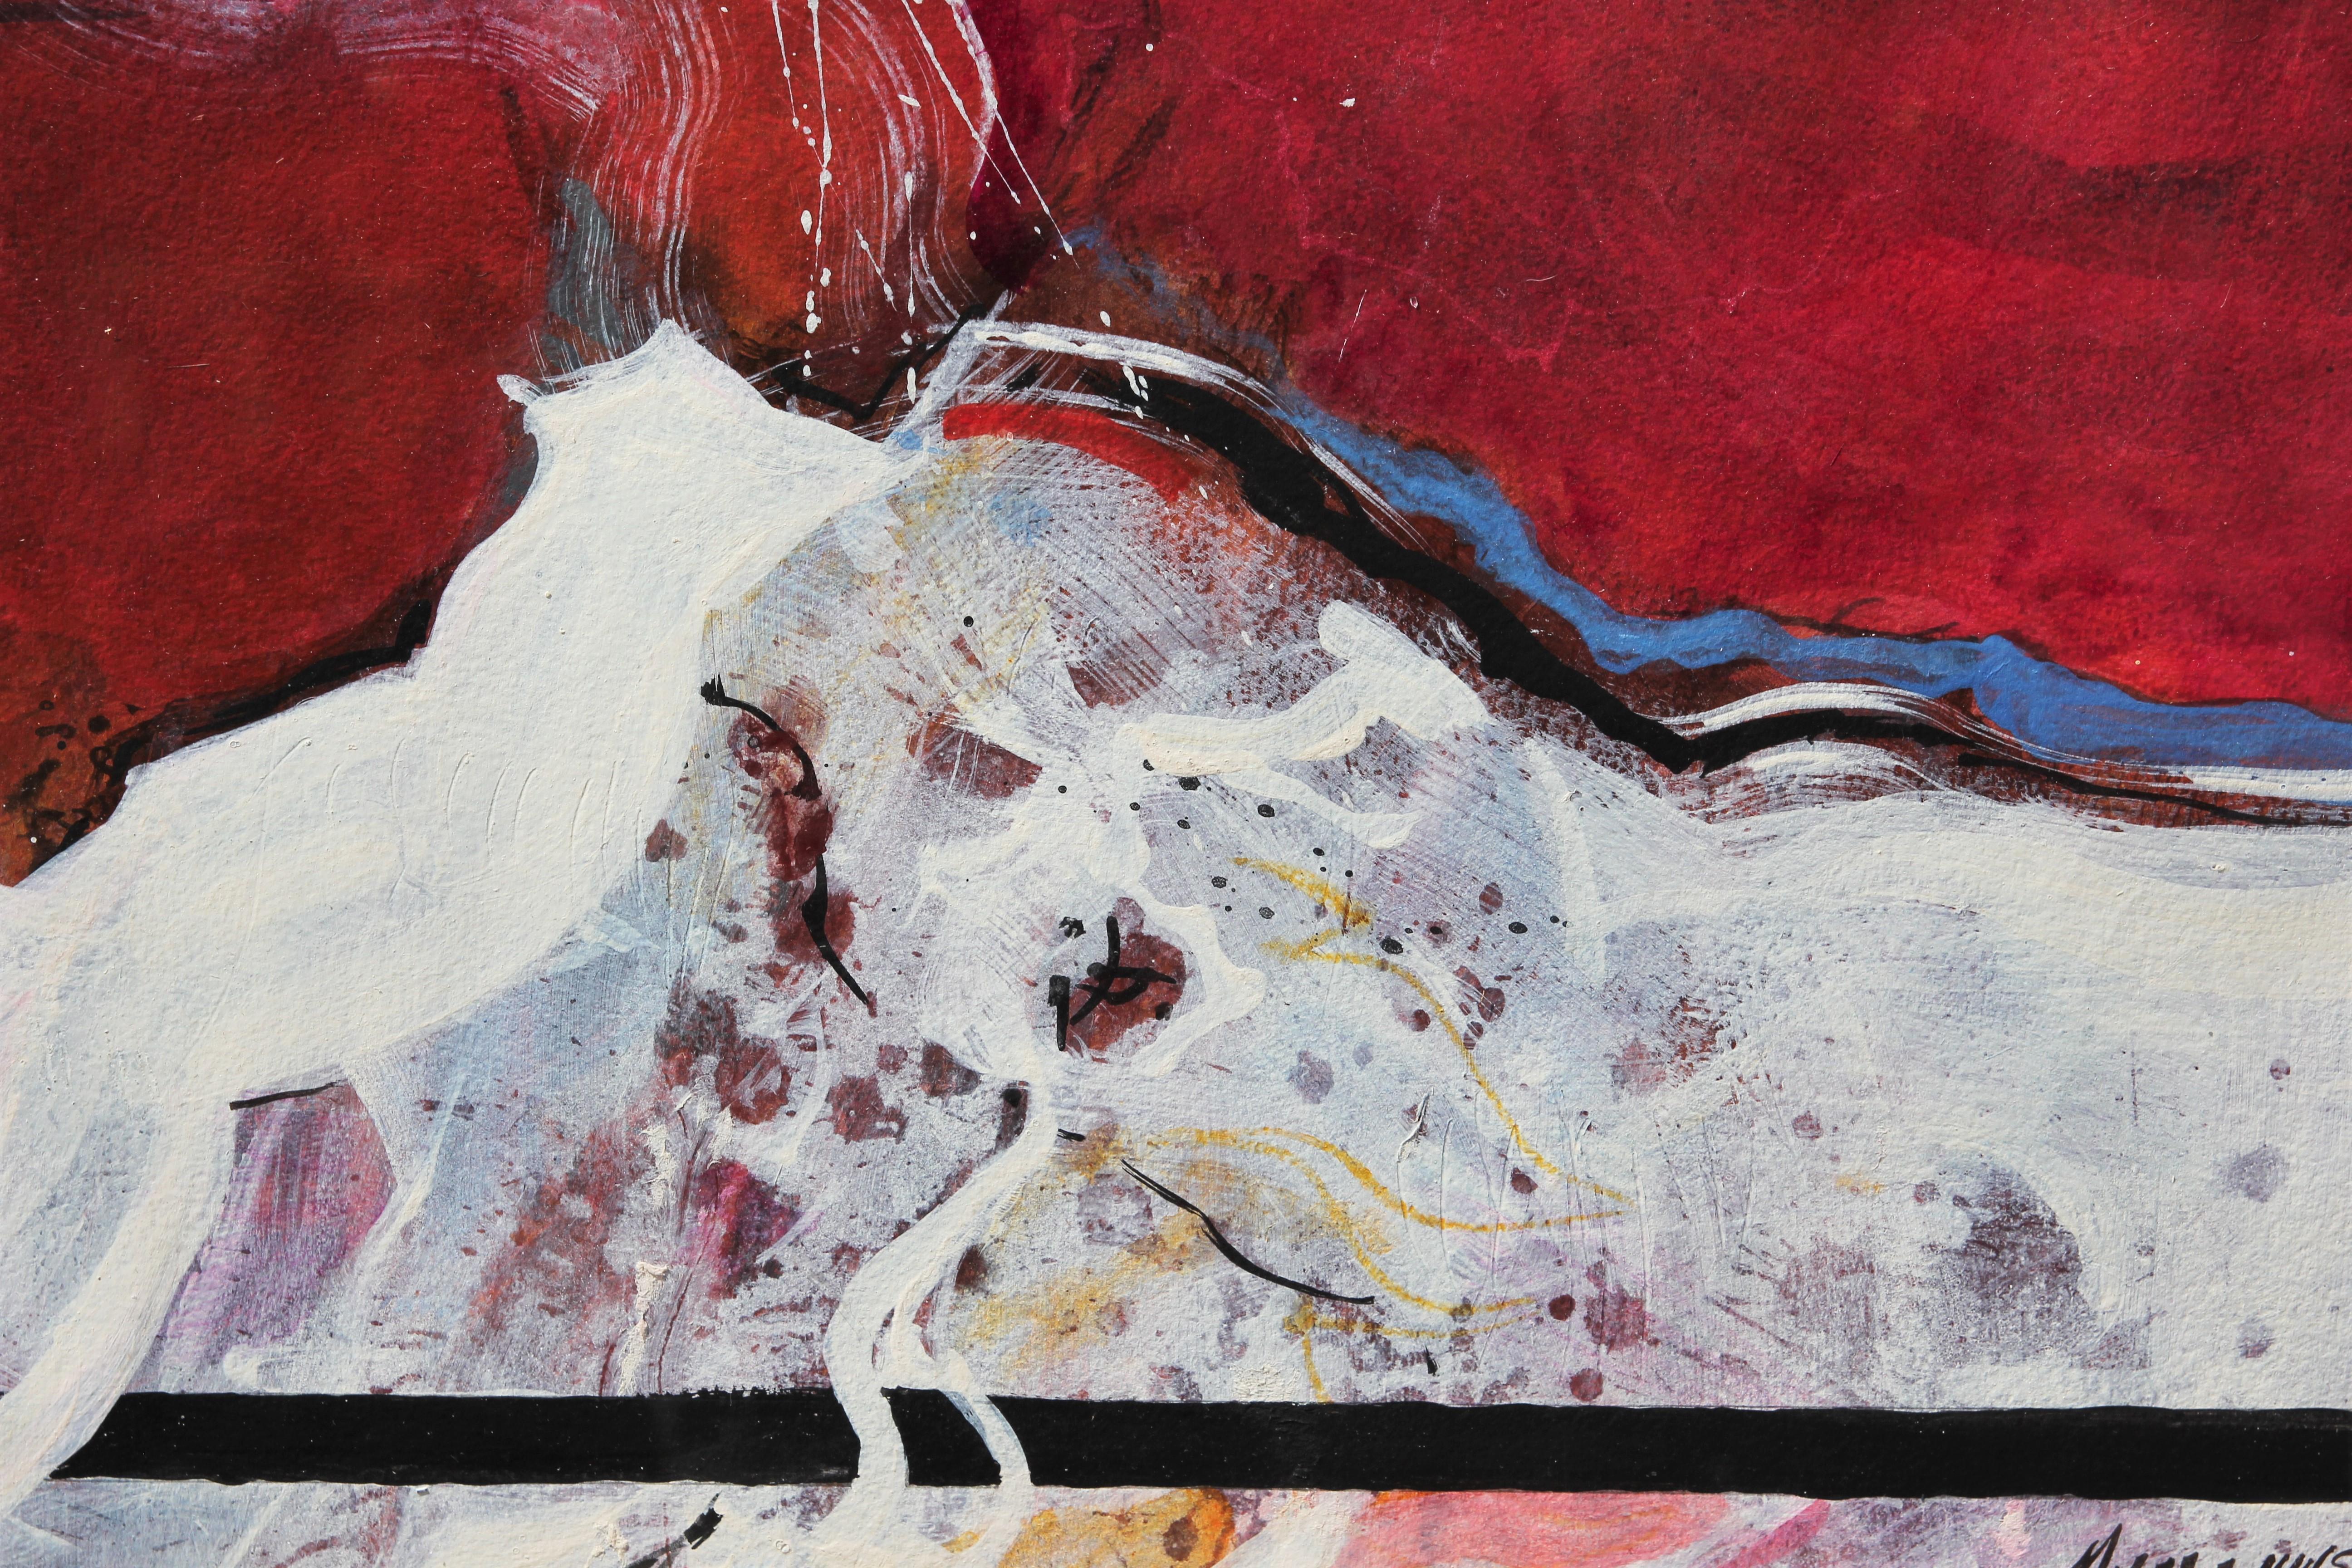 Peinture expressionniste abstraite moderne rouge et blanche réalisée par l'artiste texane Carole Myers. L'œuvre présente des traits expressifs de blanc sur un fond rouge. L'œuvre est signée dans le coin inférieur droit. Actuellement accroché dans un